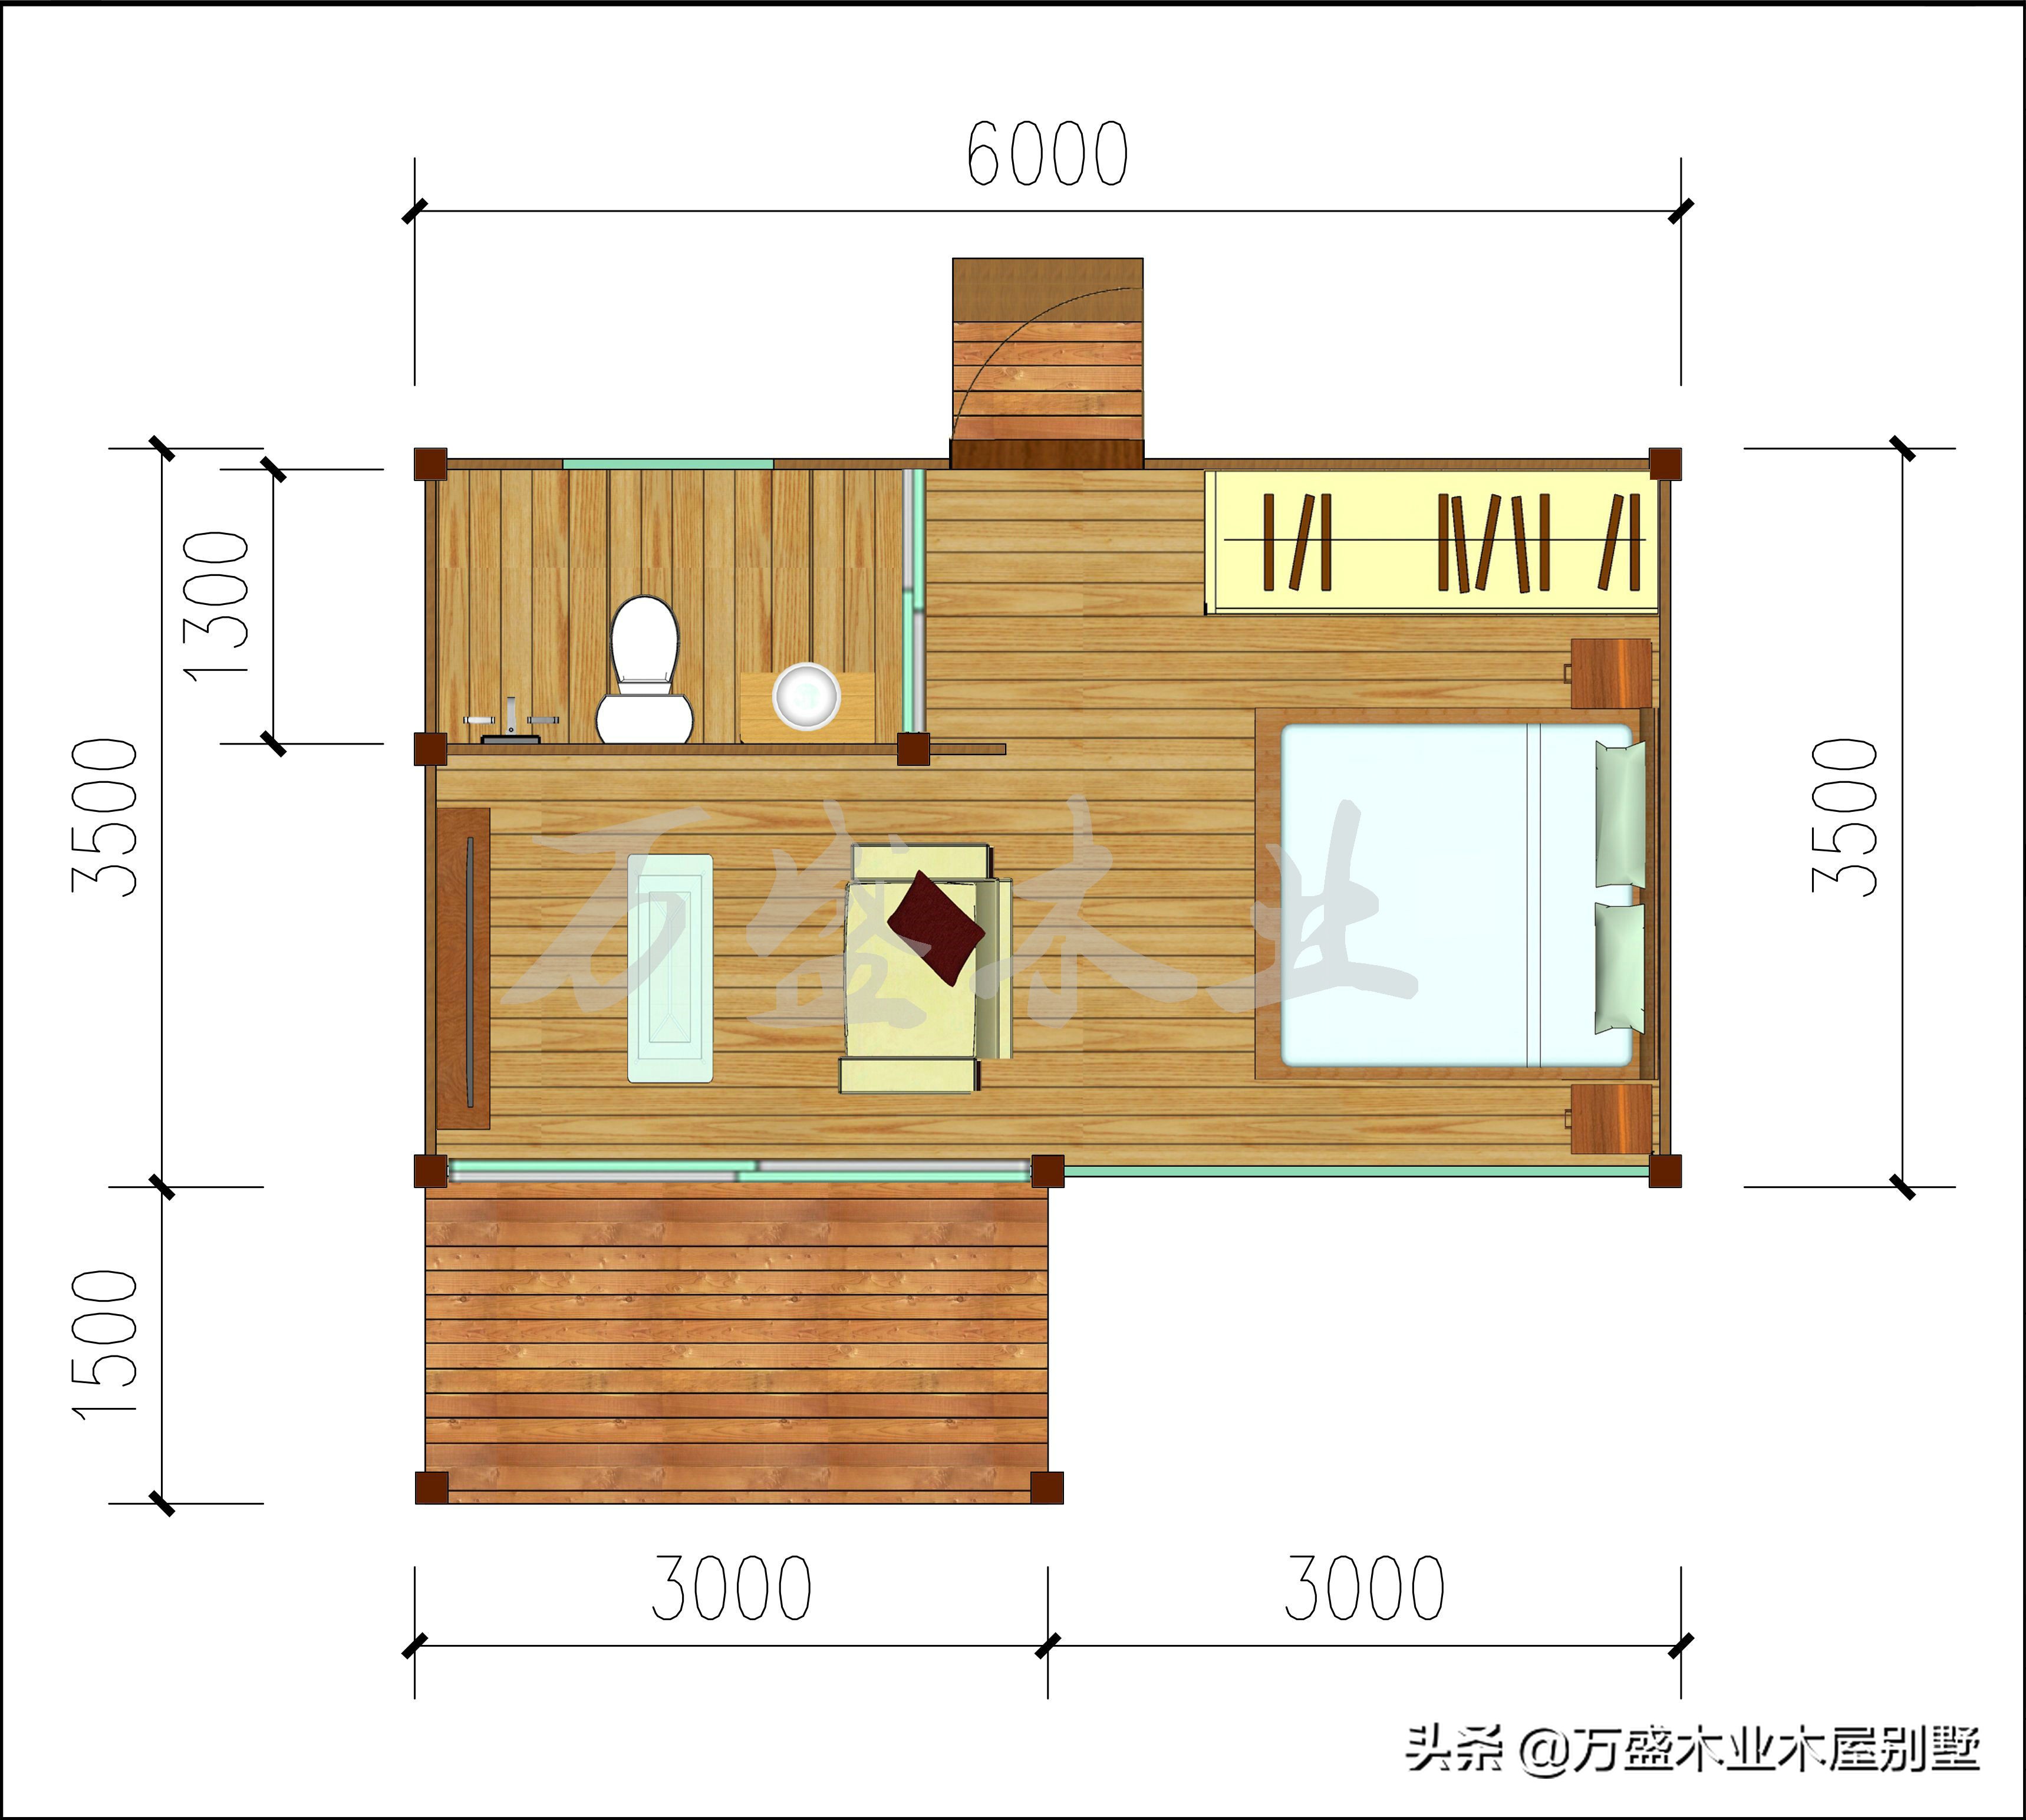 介绍的是云南临沧的一个茶园的小木屋,每套42㎡,一室一厅一卫的户型